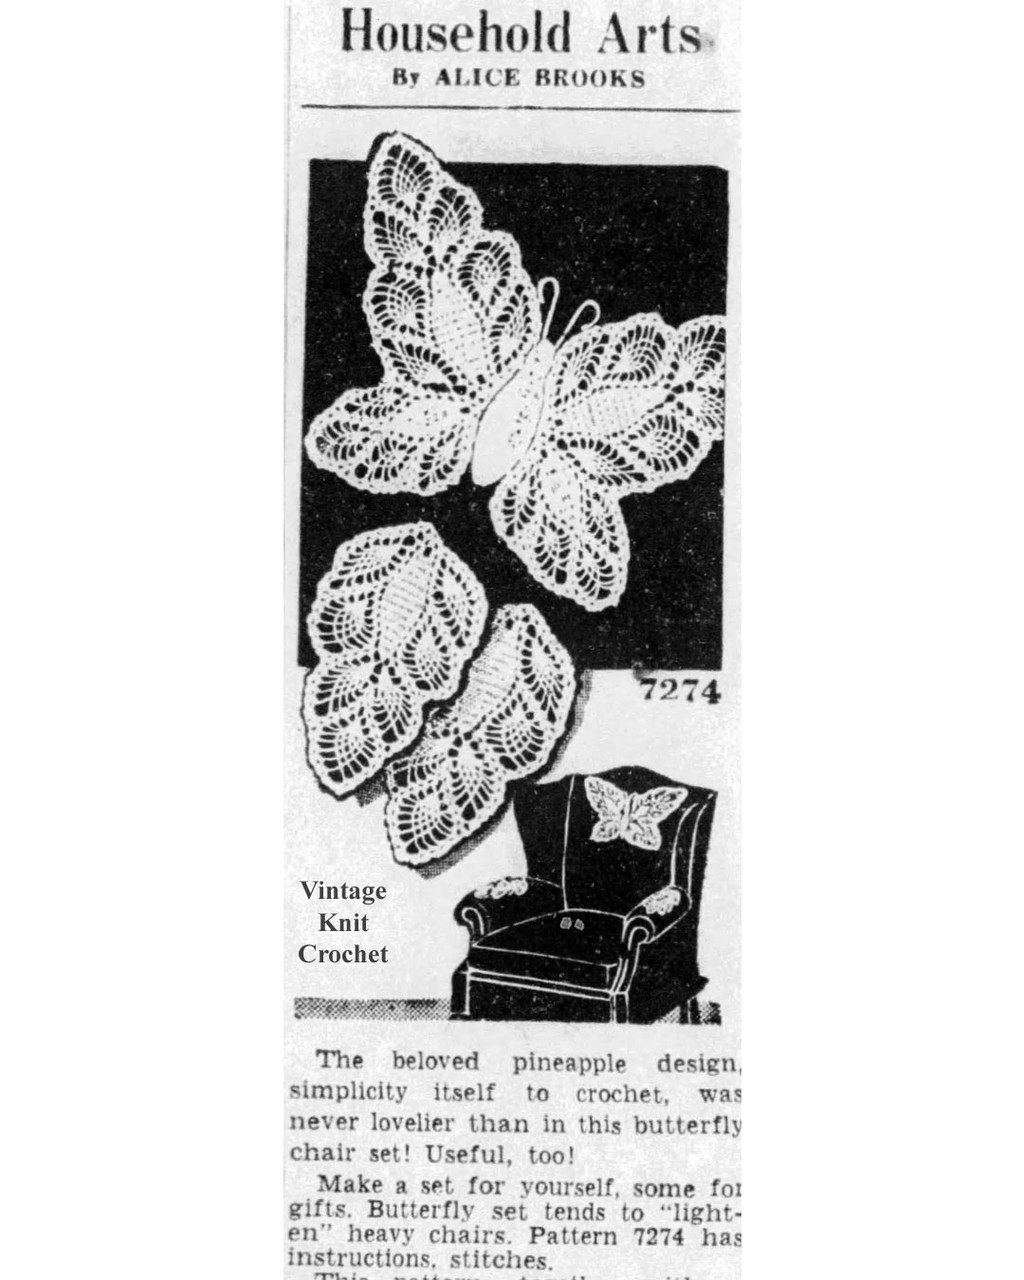 Mail Order Design 7274 Crochet Butterfly Chair Set Newspaper Advertisement